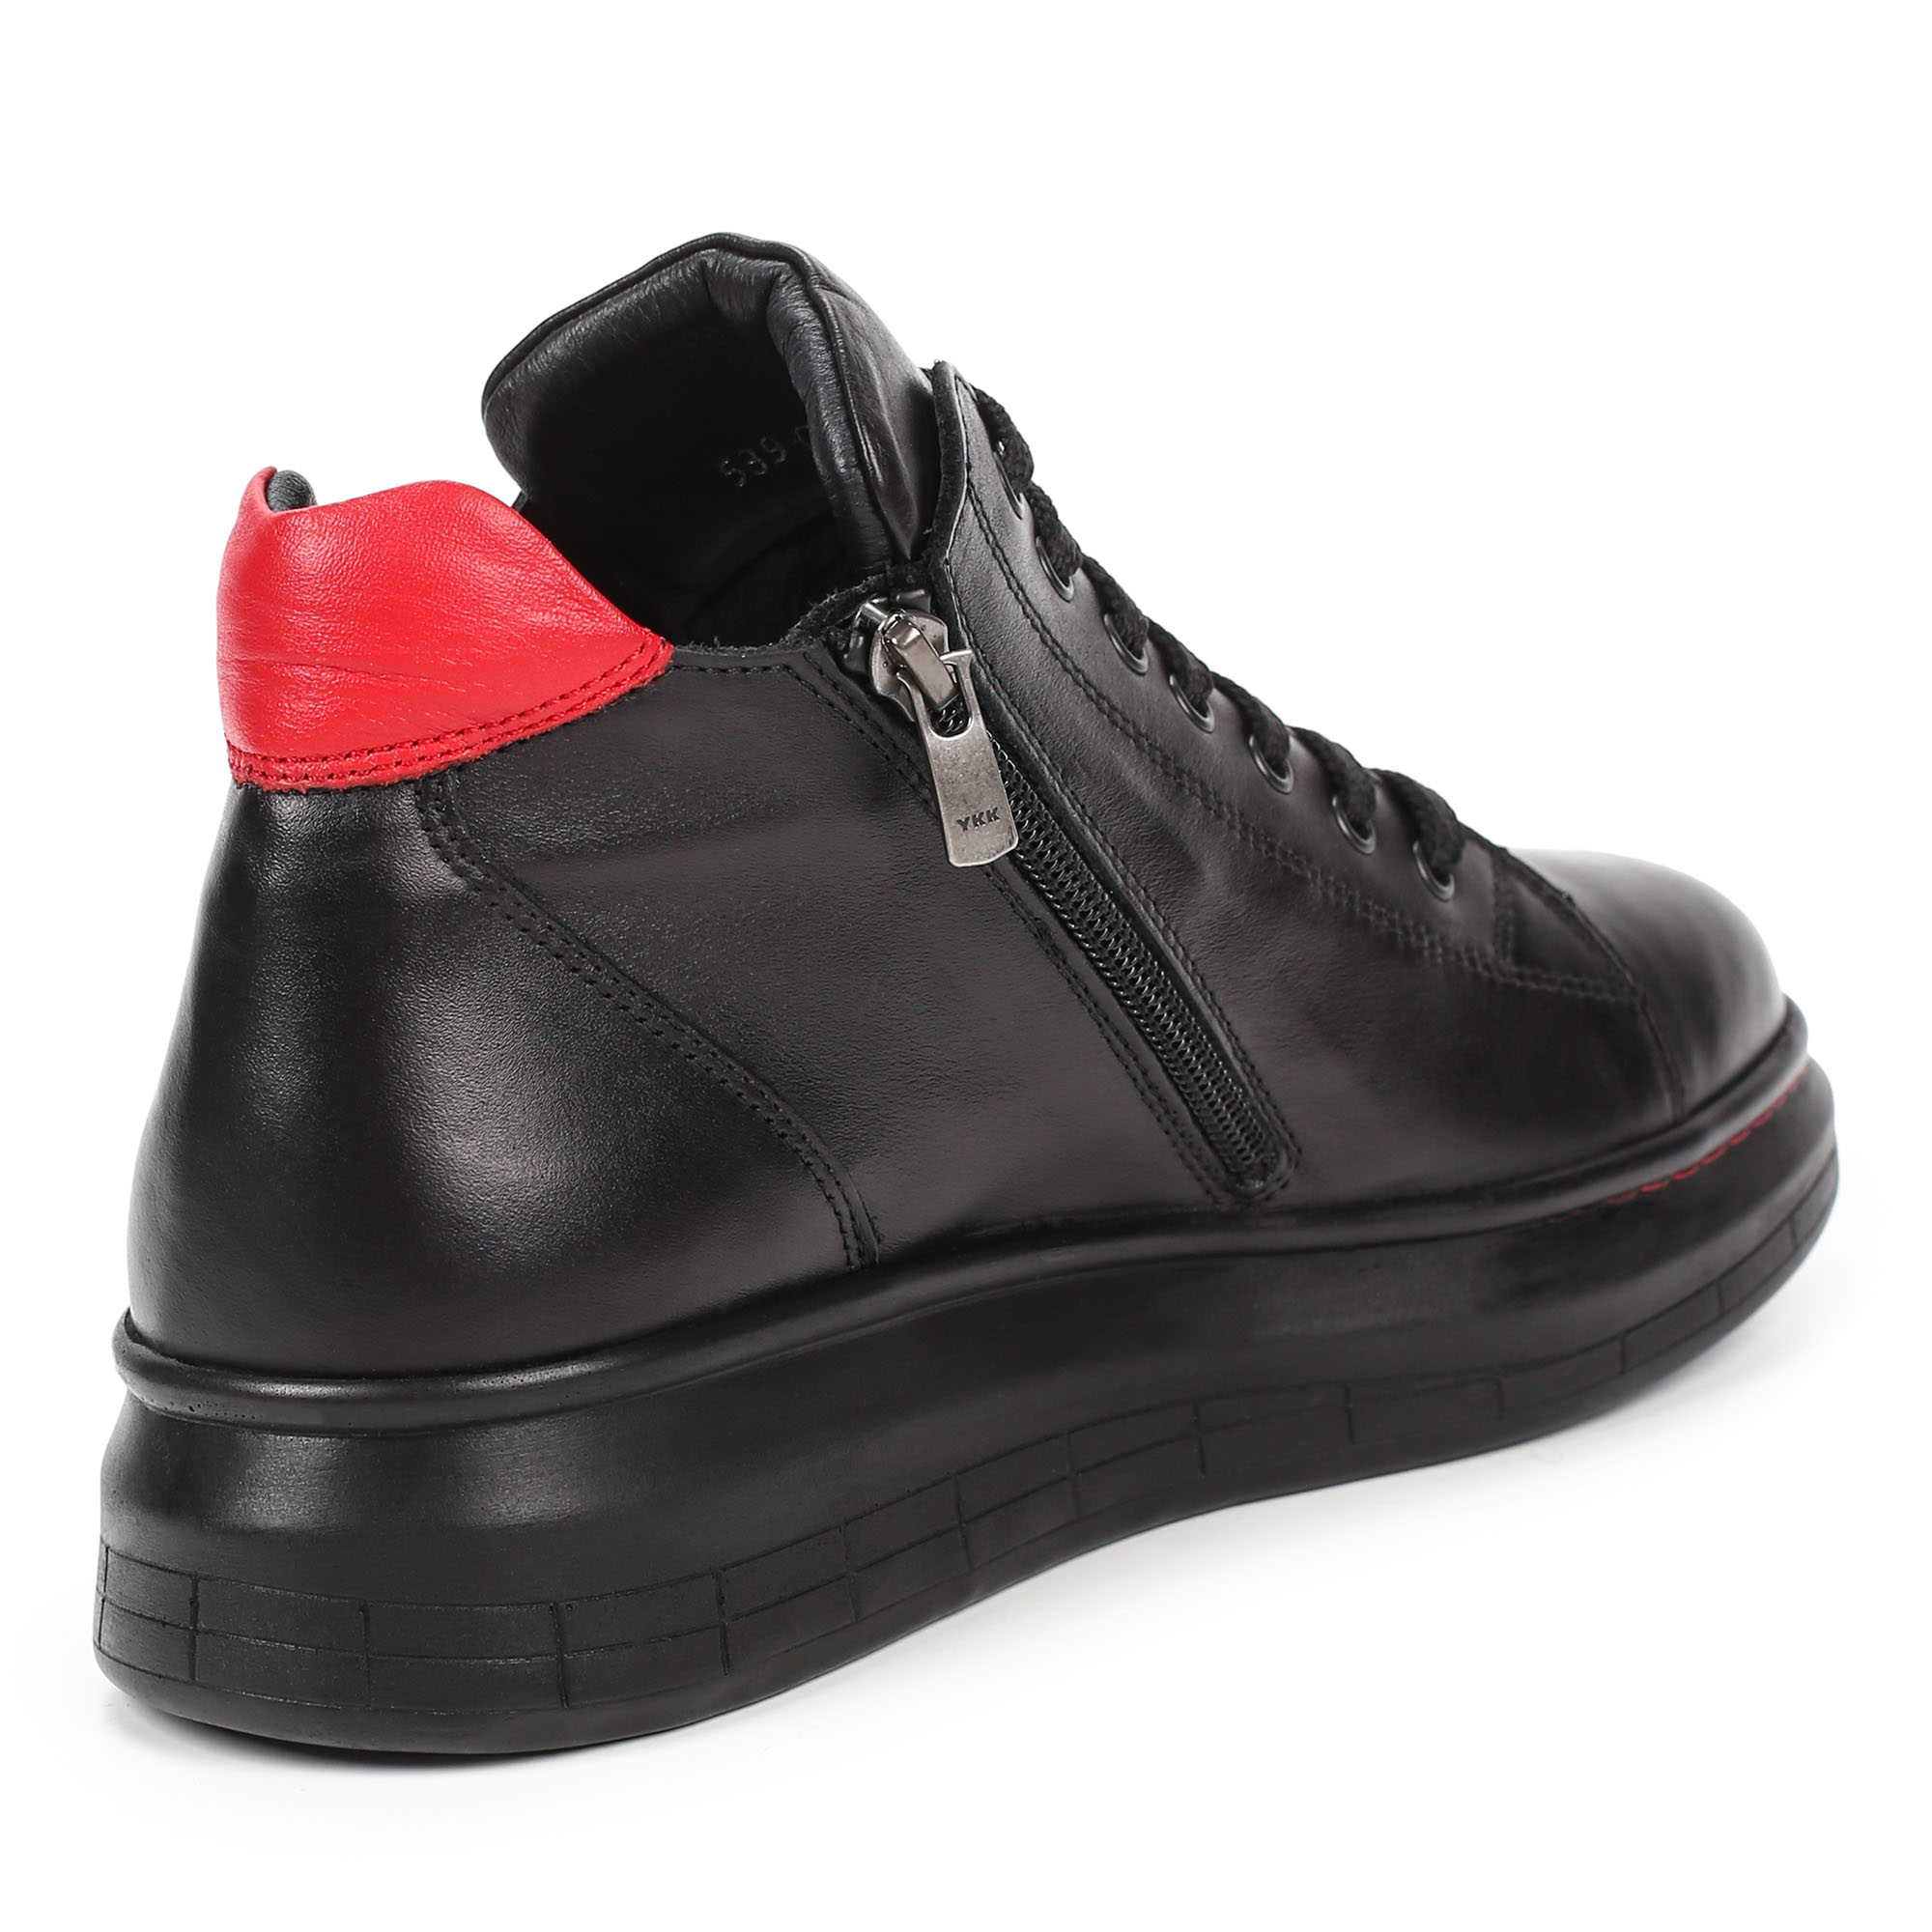 Ботинки Thomas Munz 539-015A-2102, цвет черный, размер 36 - фото 3